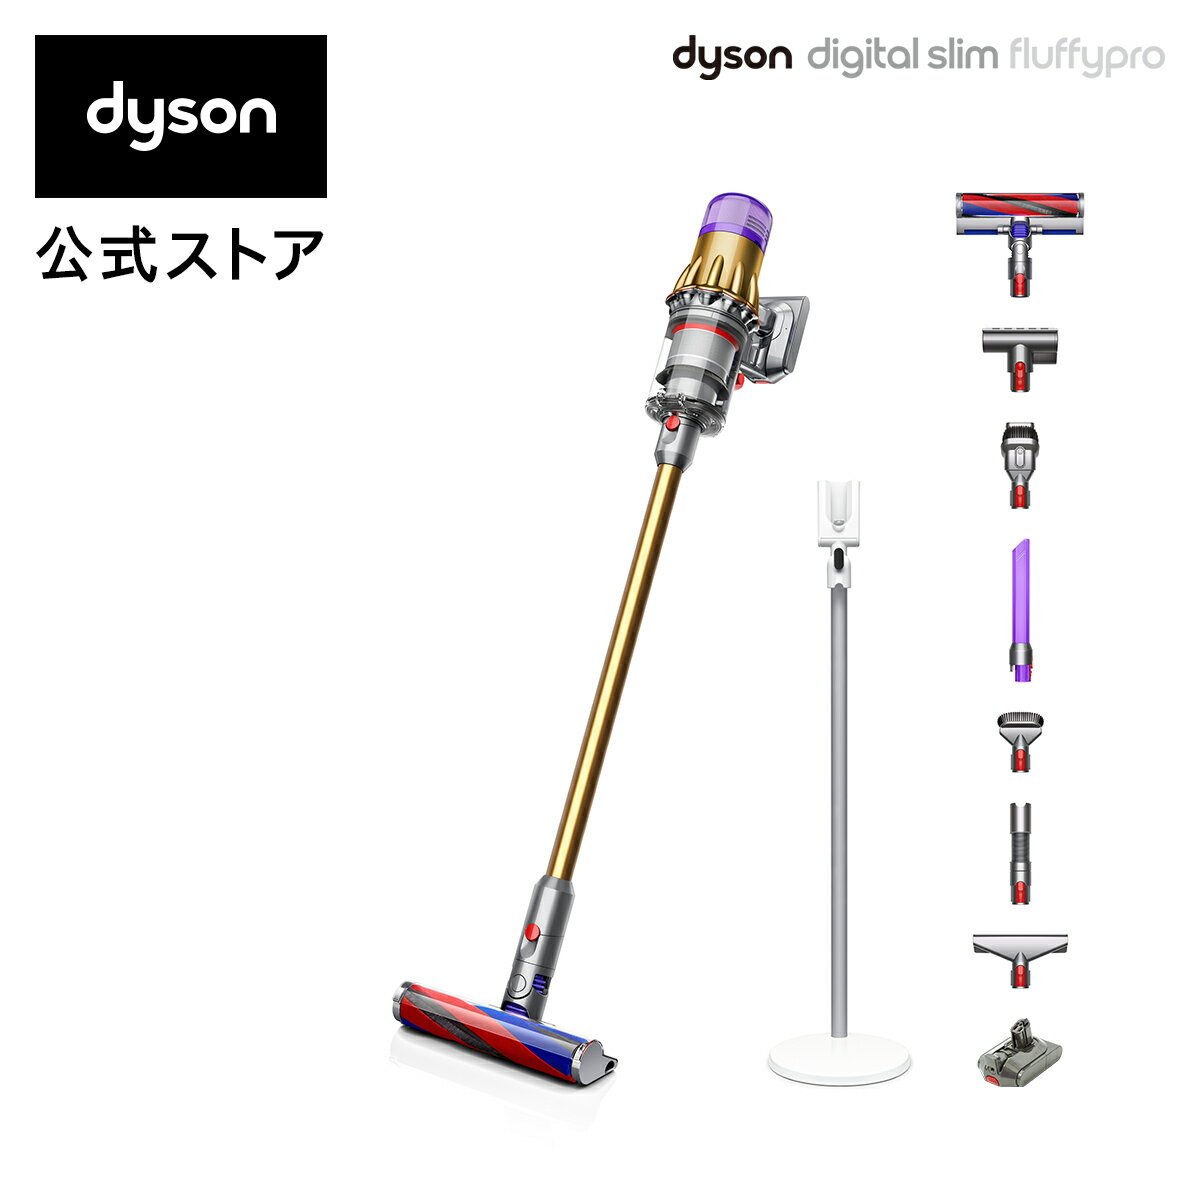 Dyson（ダイソン）『Dyson Digital Slim Fluffy Pro (SV18 FF PRO)』